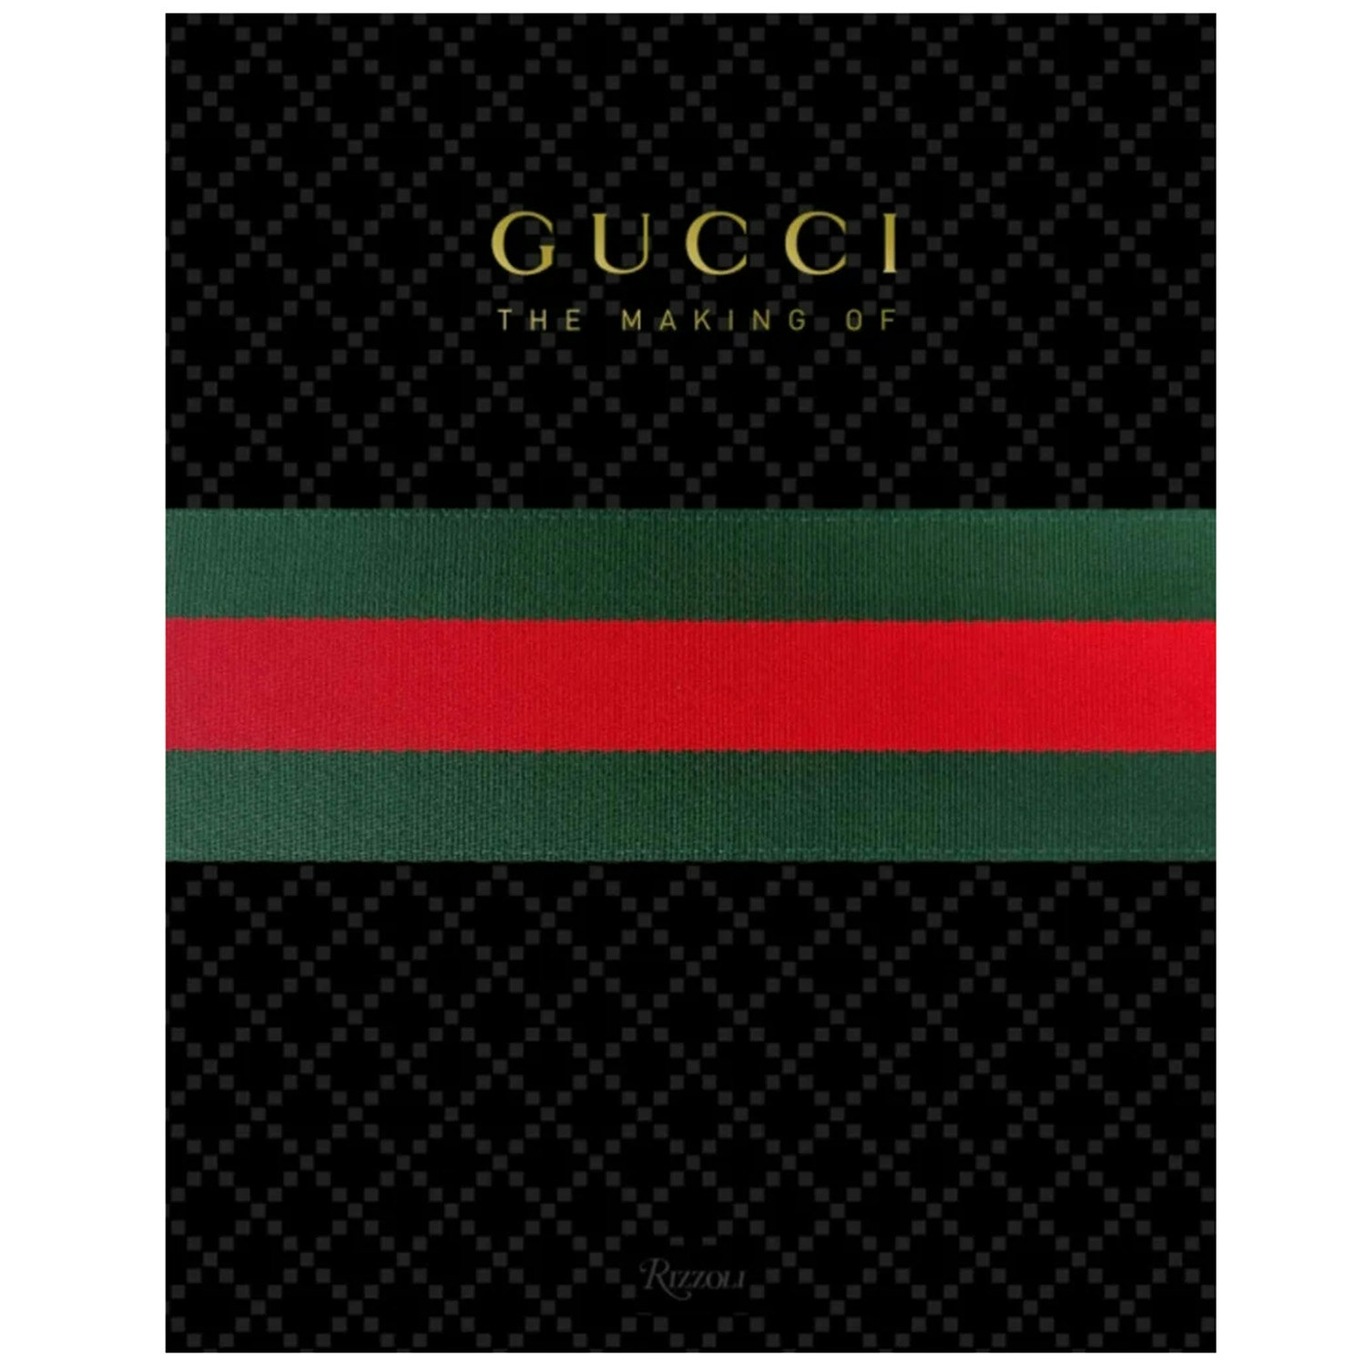 Gucci Book